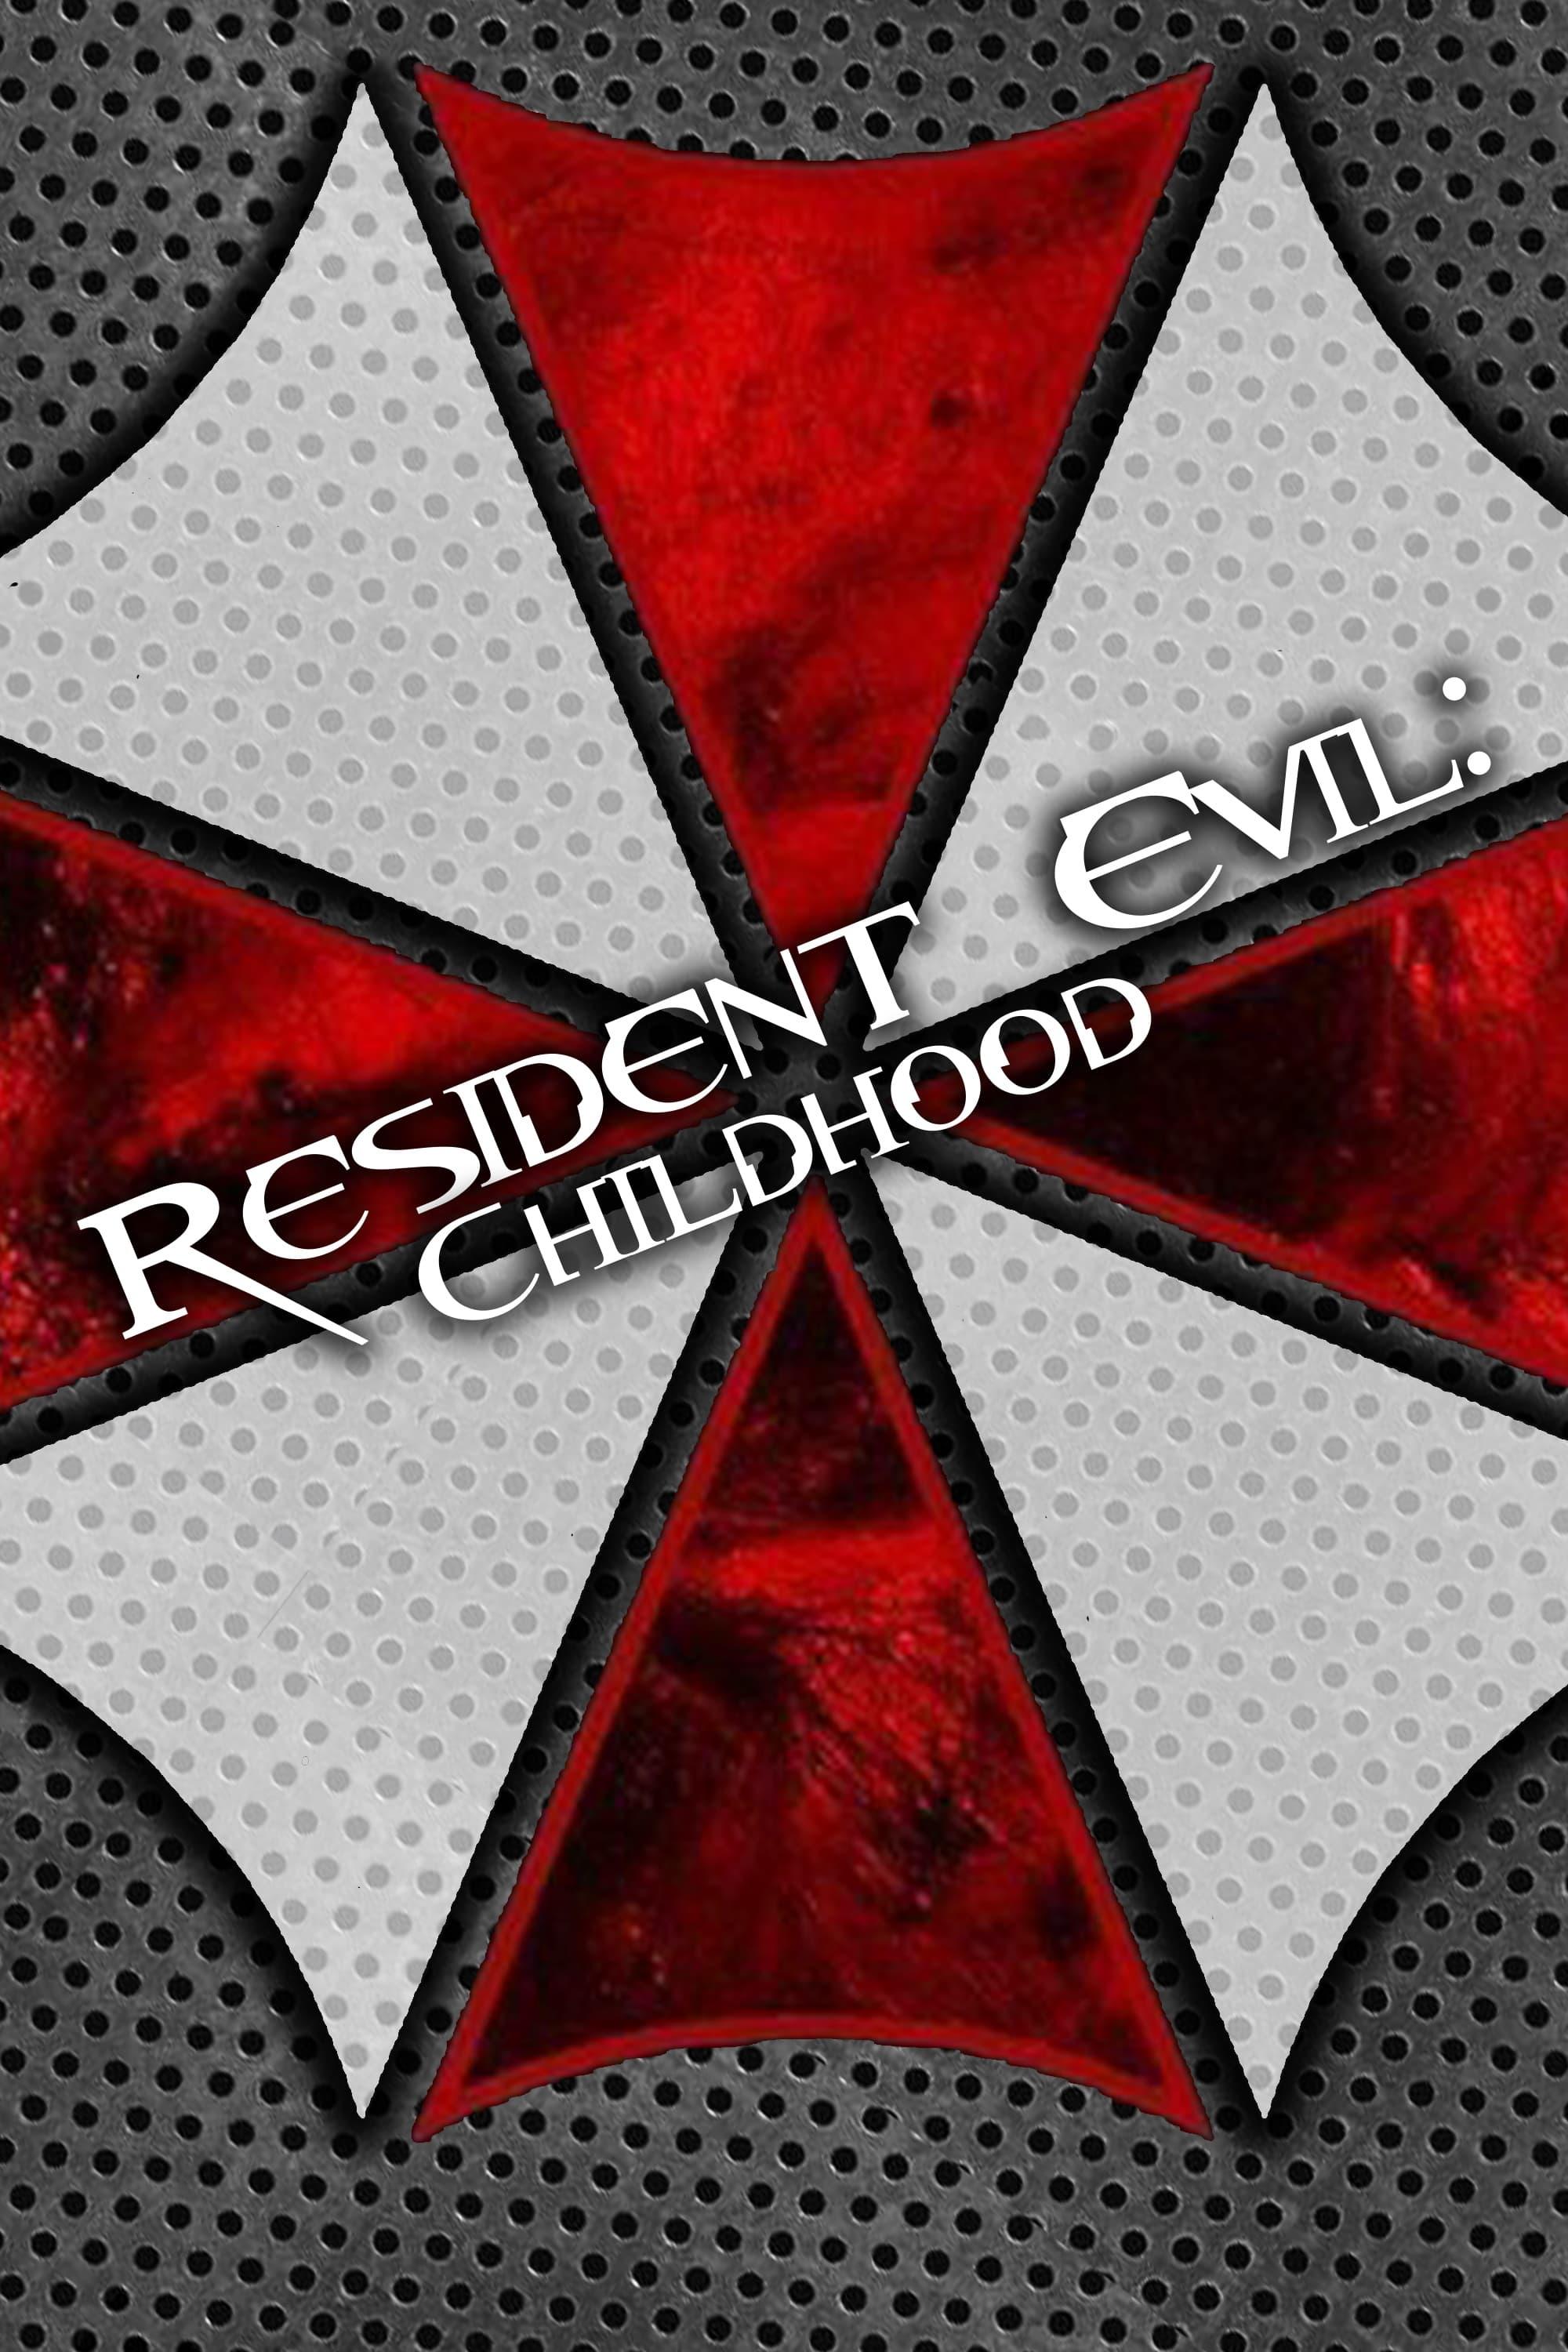 Resident Evil: Childhood poster